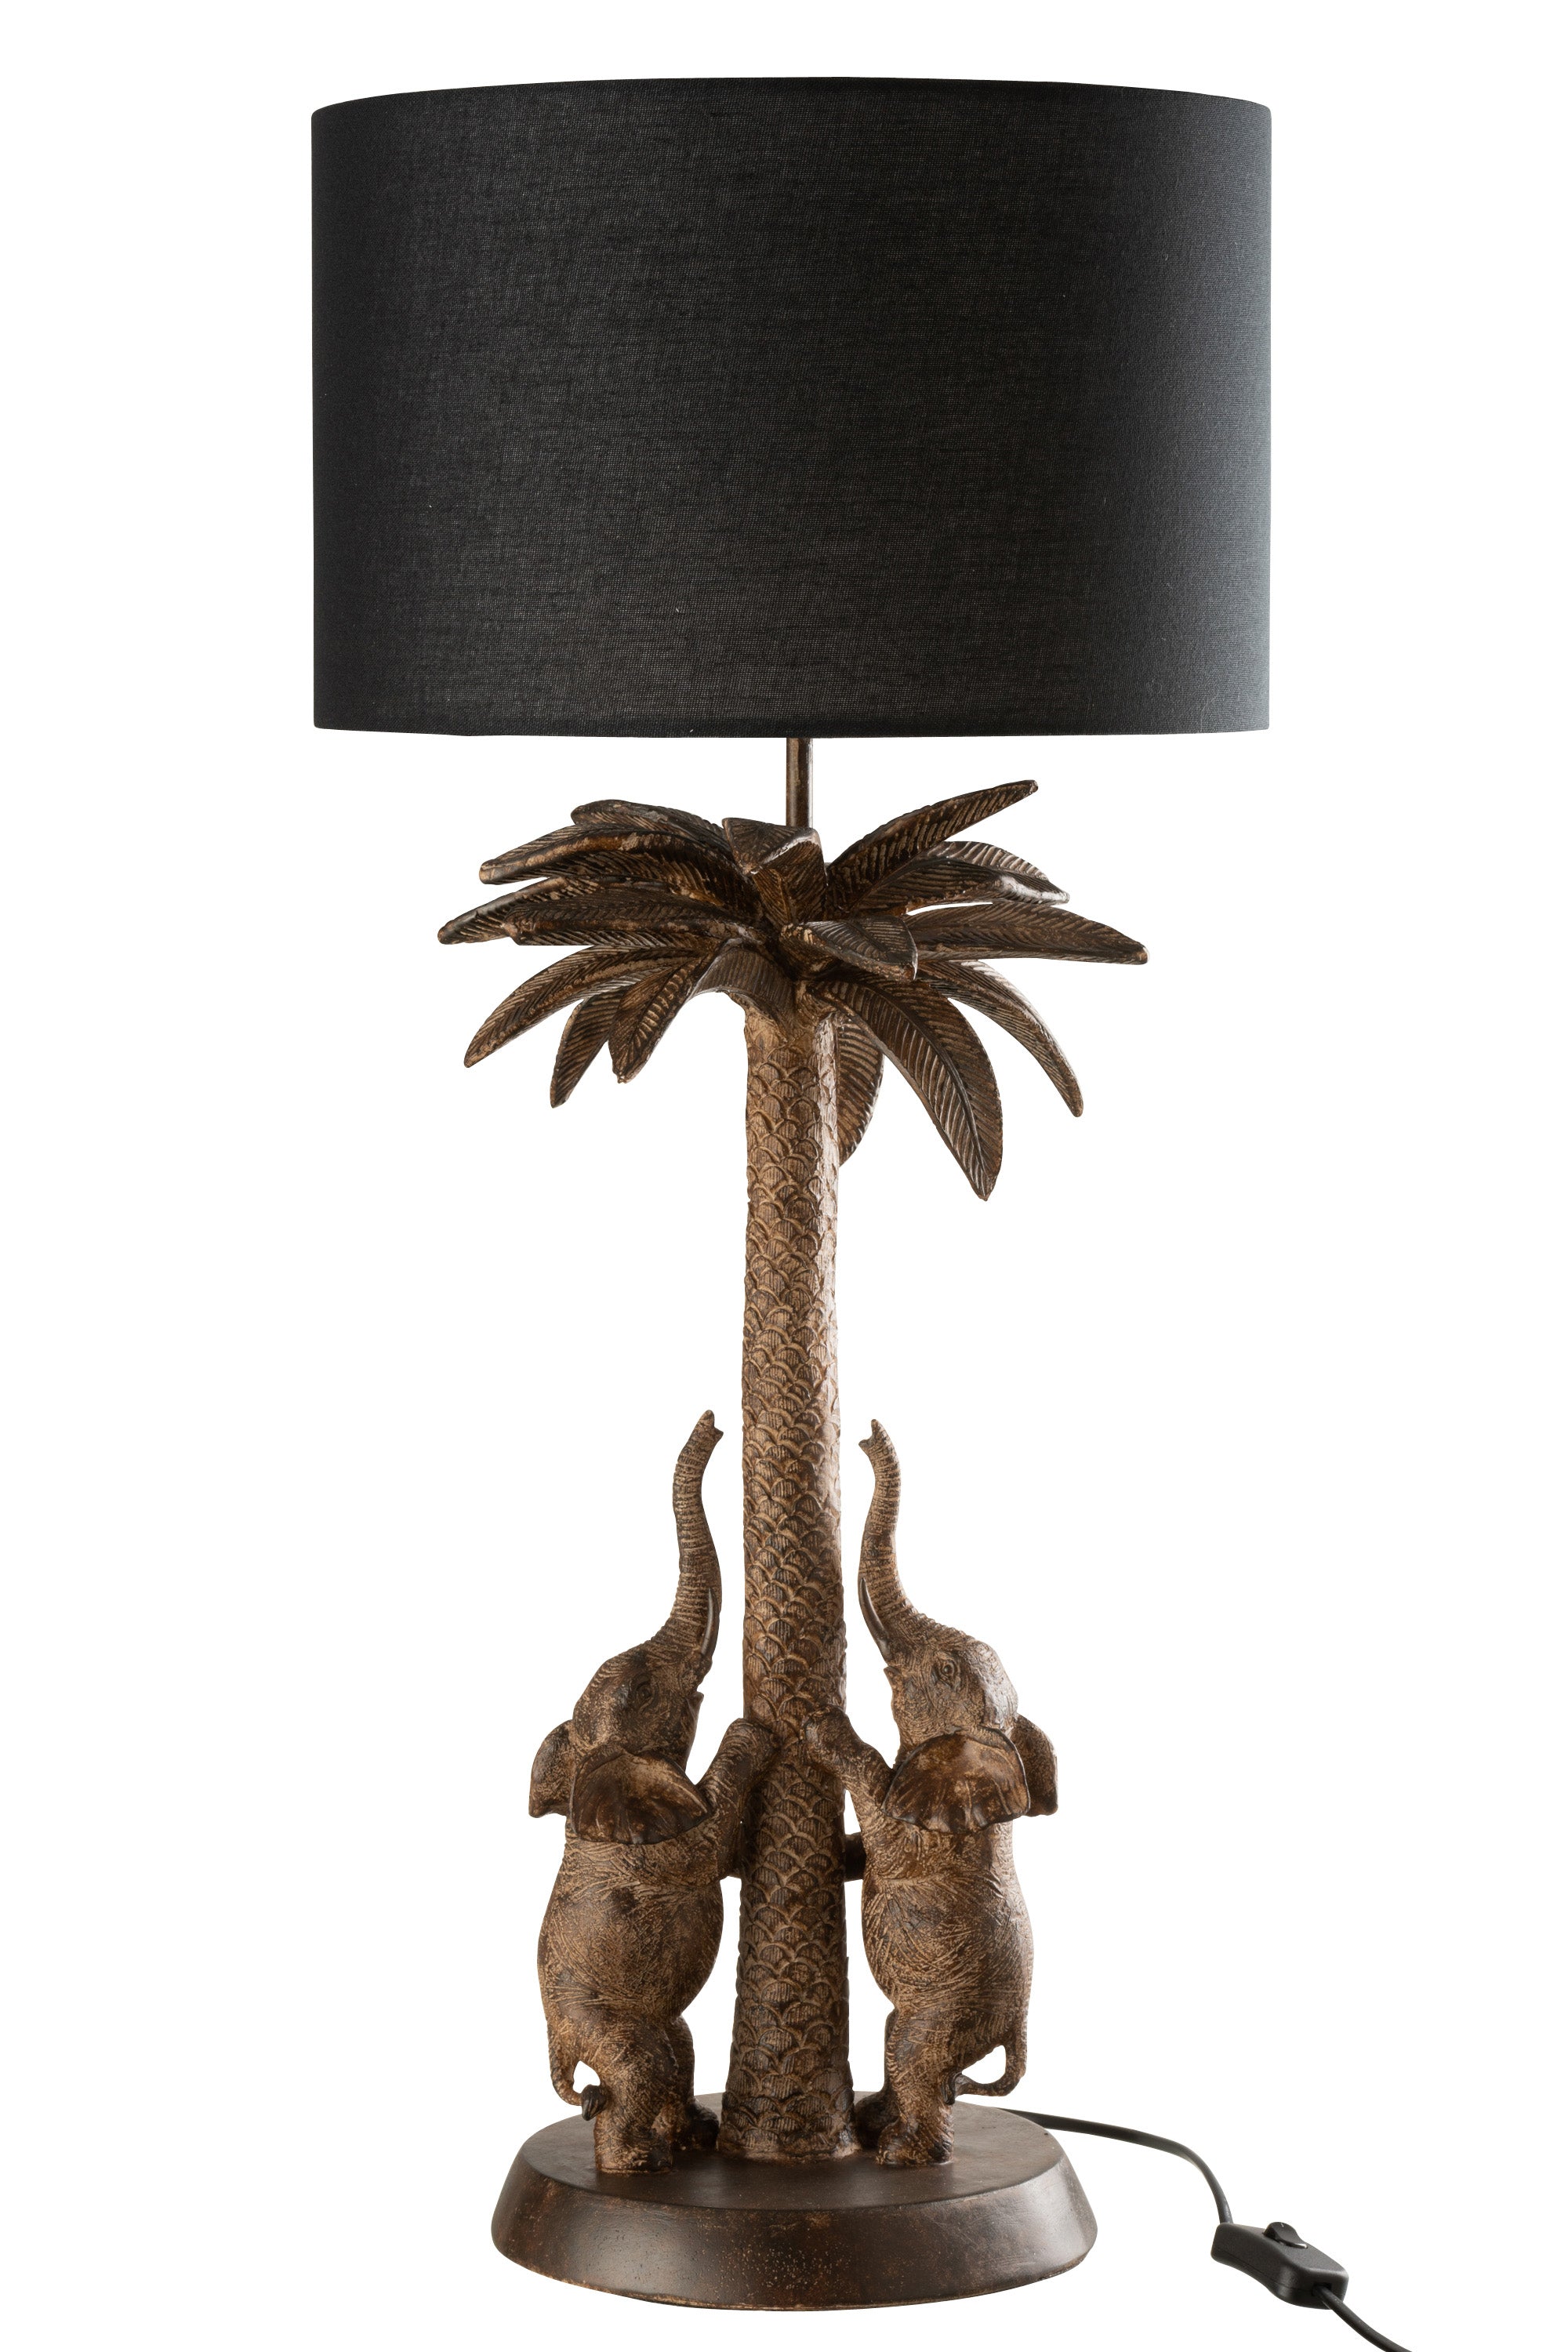 Lampe aus braunem Polyresin, auf einem runden Sockel stehen zwei Elefanten, die mit nach oben gesteckten Rüsseln auf zwei Beinen am Stamm einer Palme stehen, darüber ein runder, dunkelbrauner Lampenschirm.